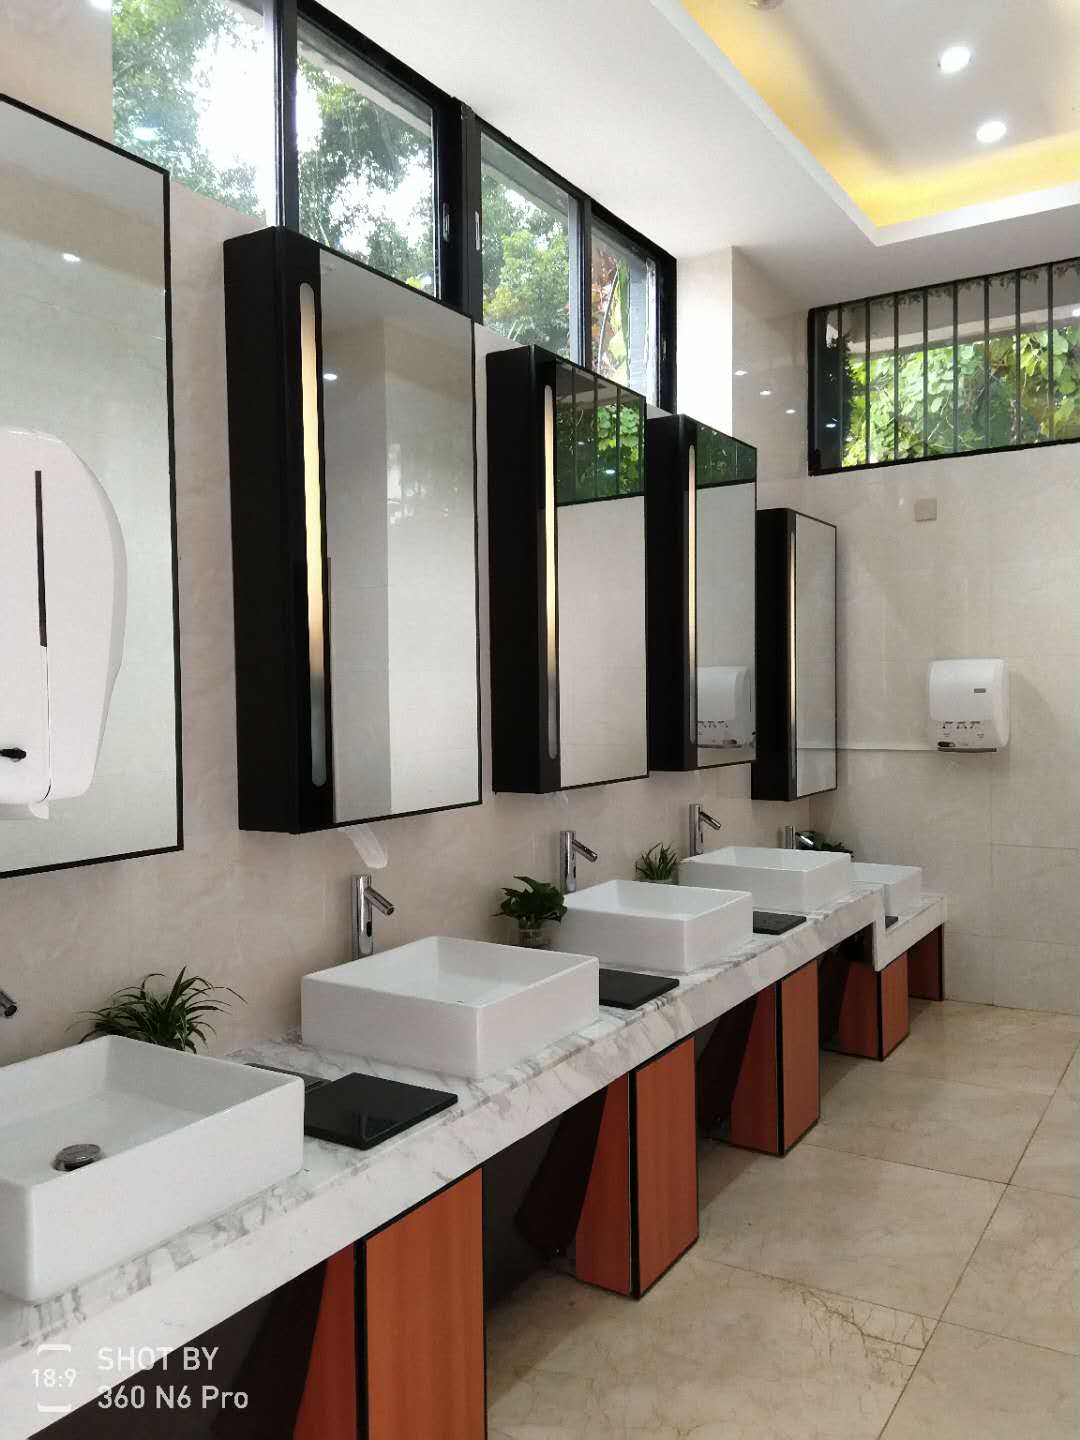 智慧厕所 智能厕位引导系统-智慧公厕 智慧厕所方案 物联网